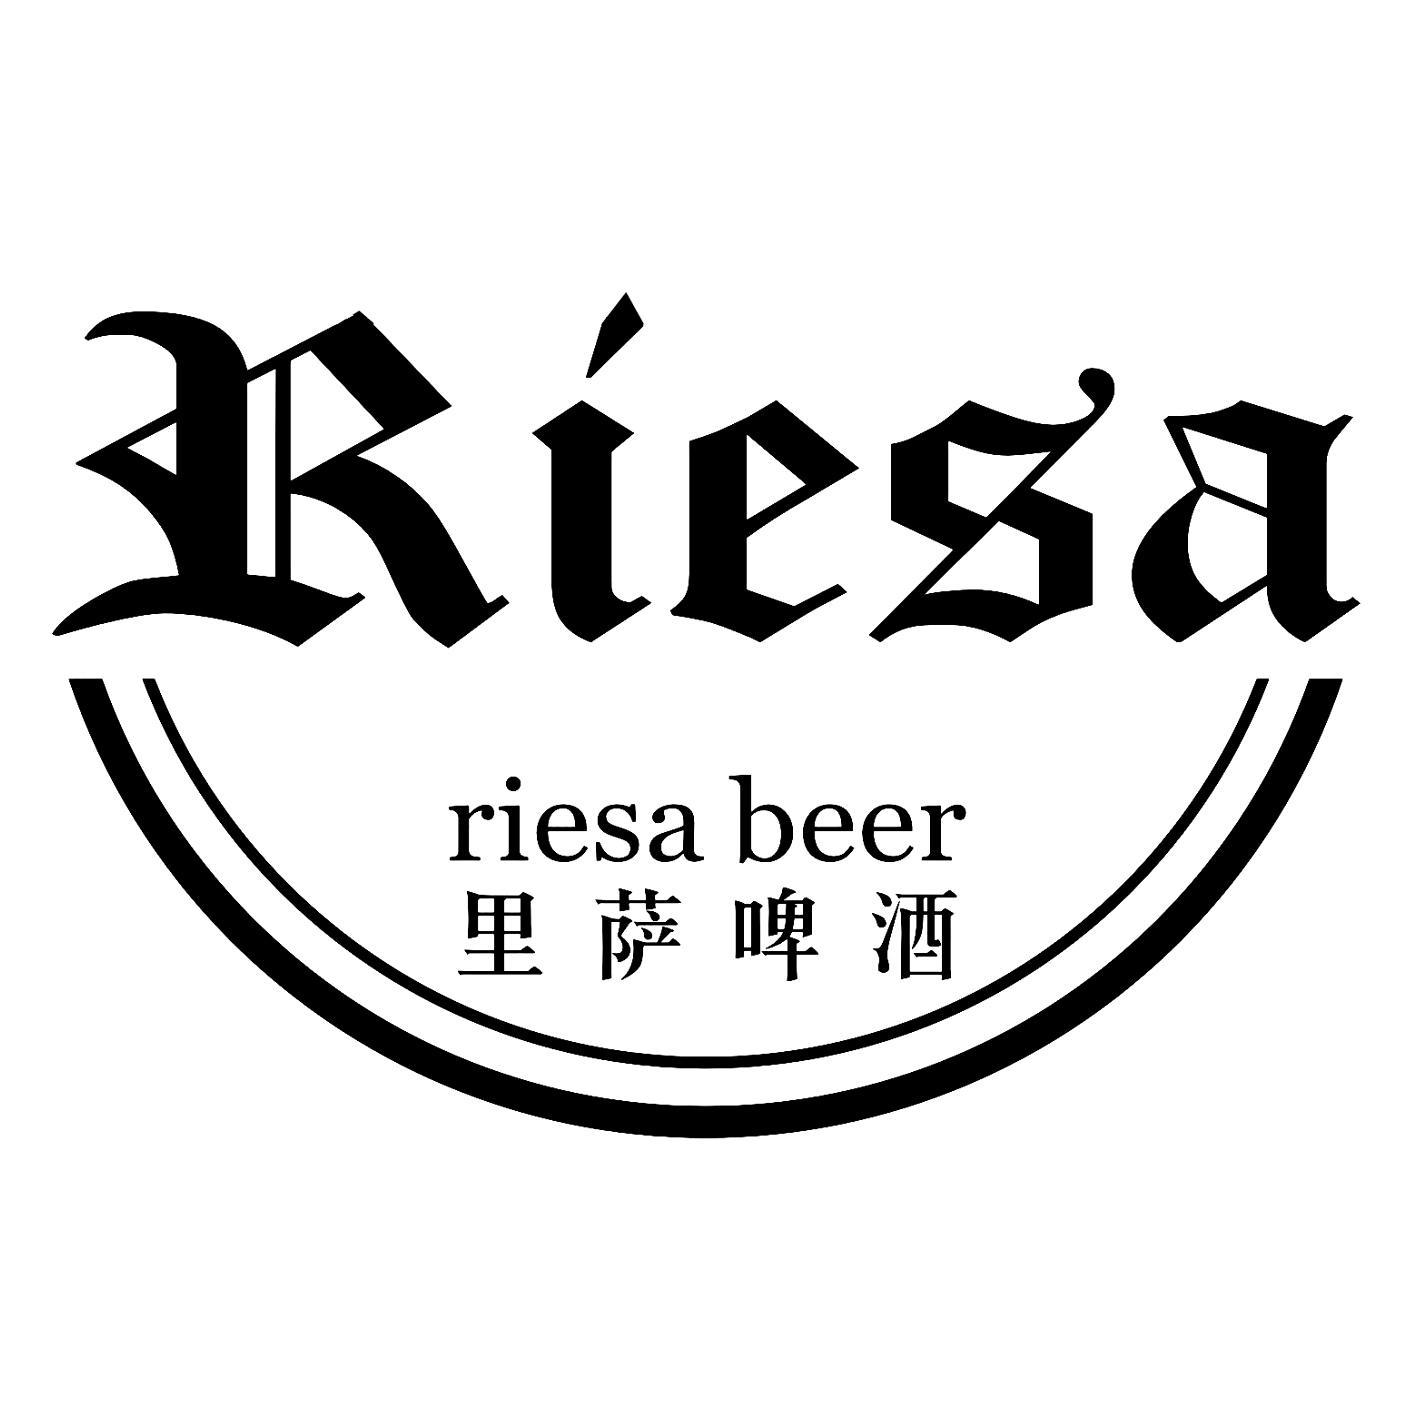 里萨啤酒 riesa beer  riesa商标注册申请等待驳回复审